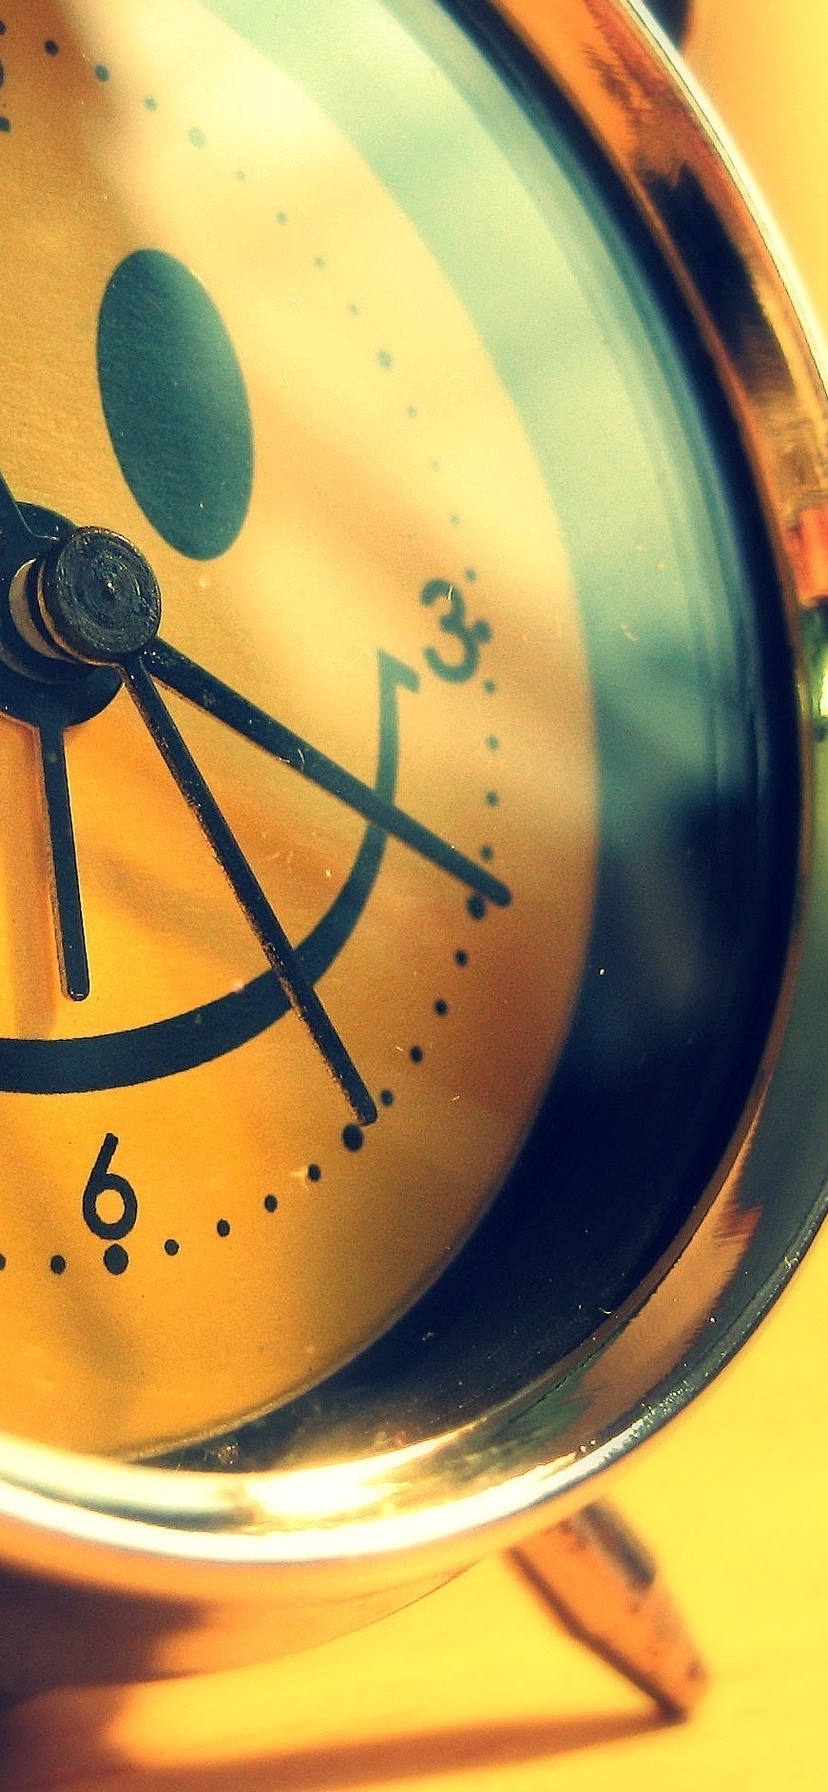 Картинка: Часы, будильник, циферблат, стрелки, улыбка